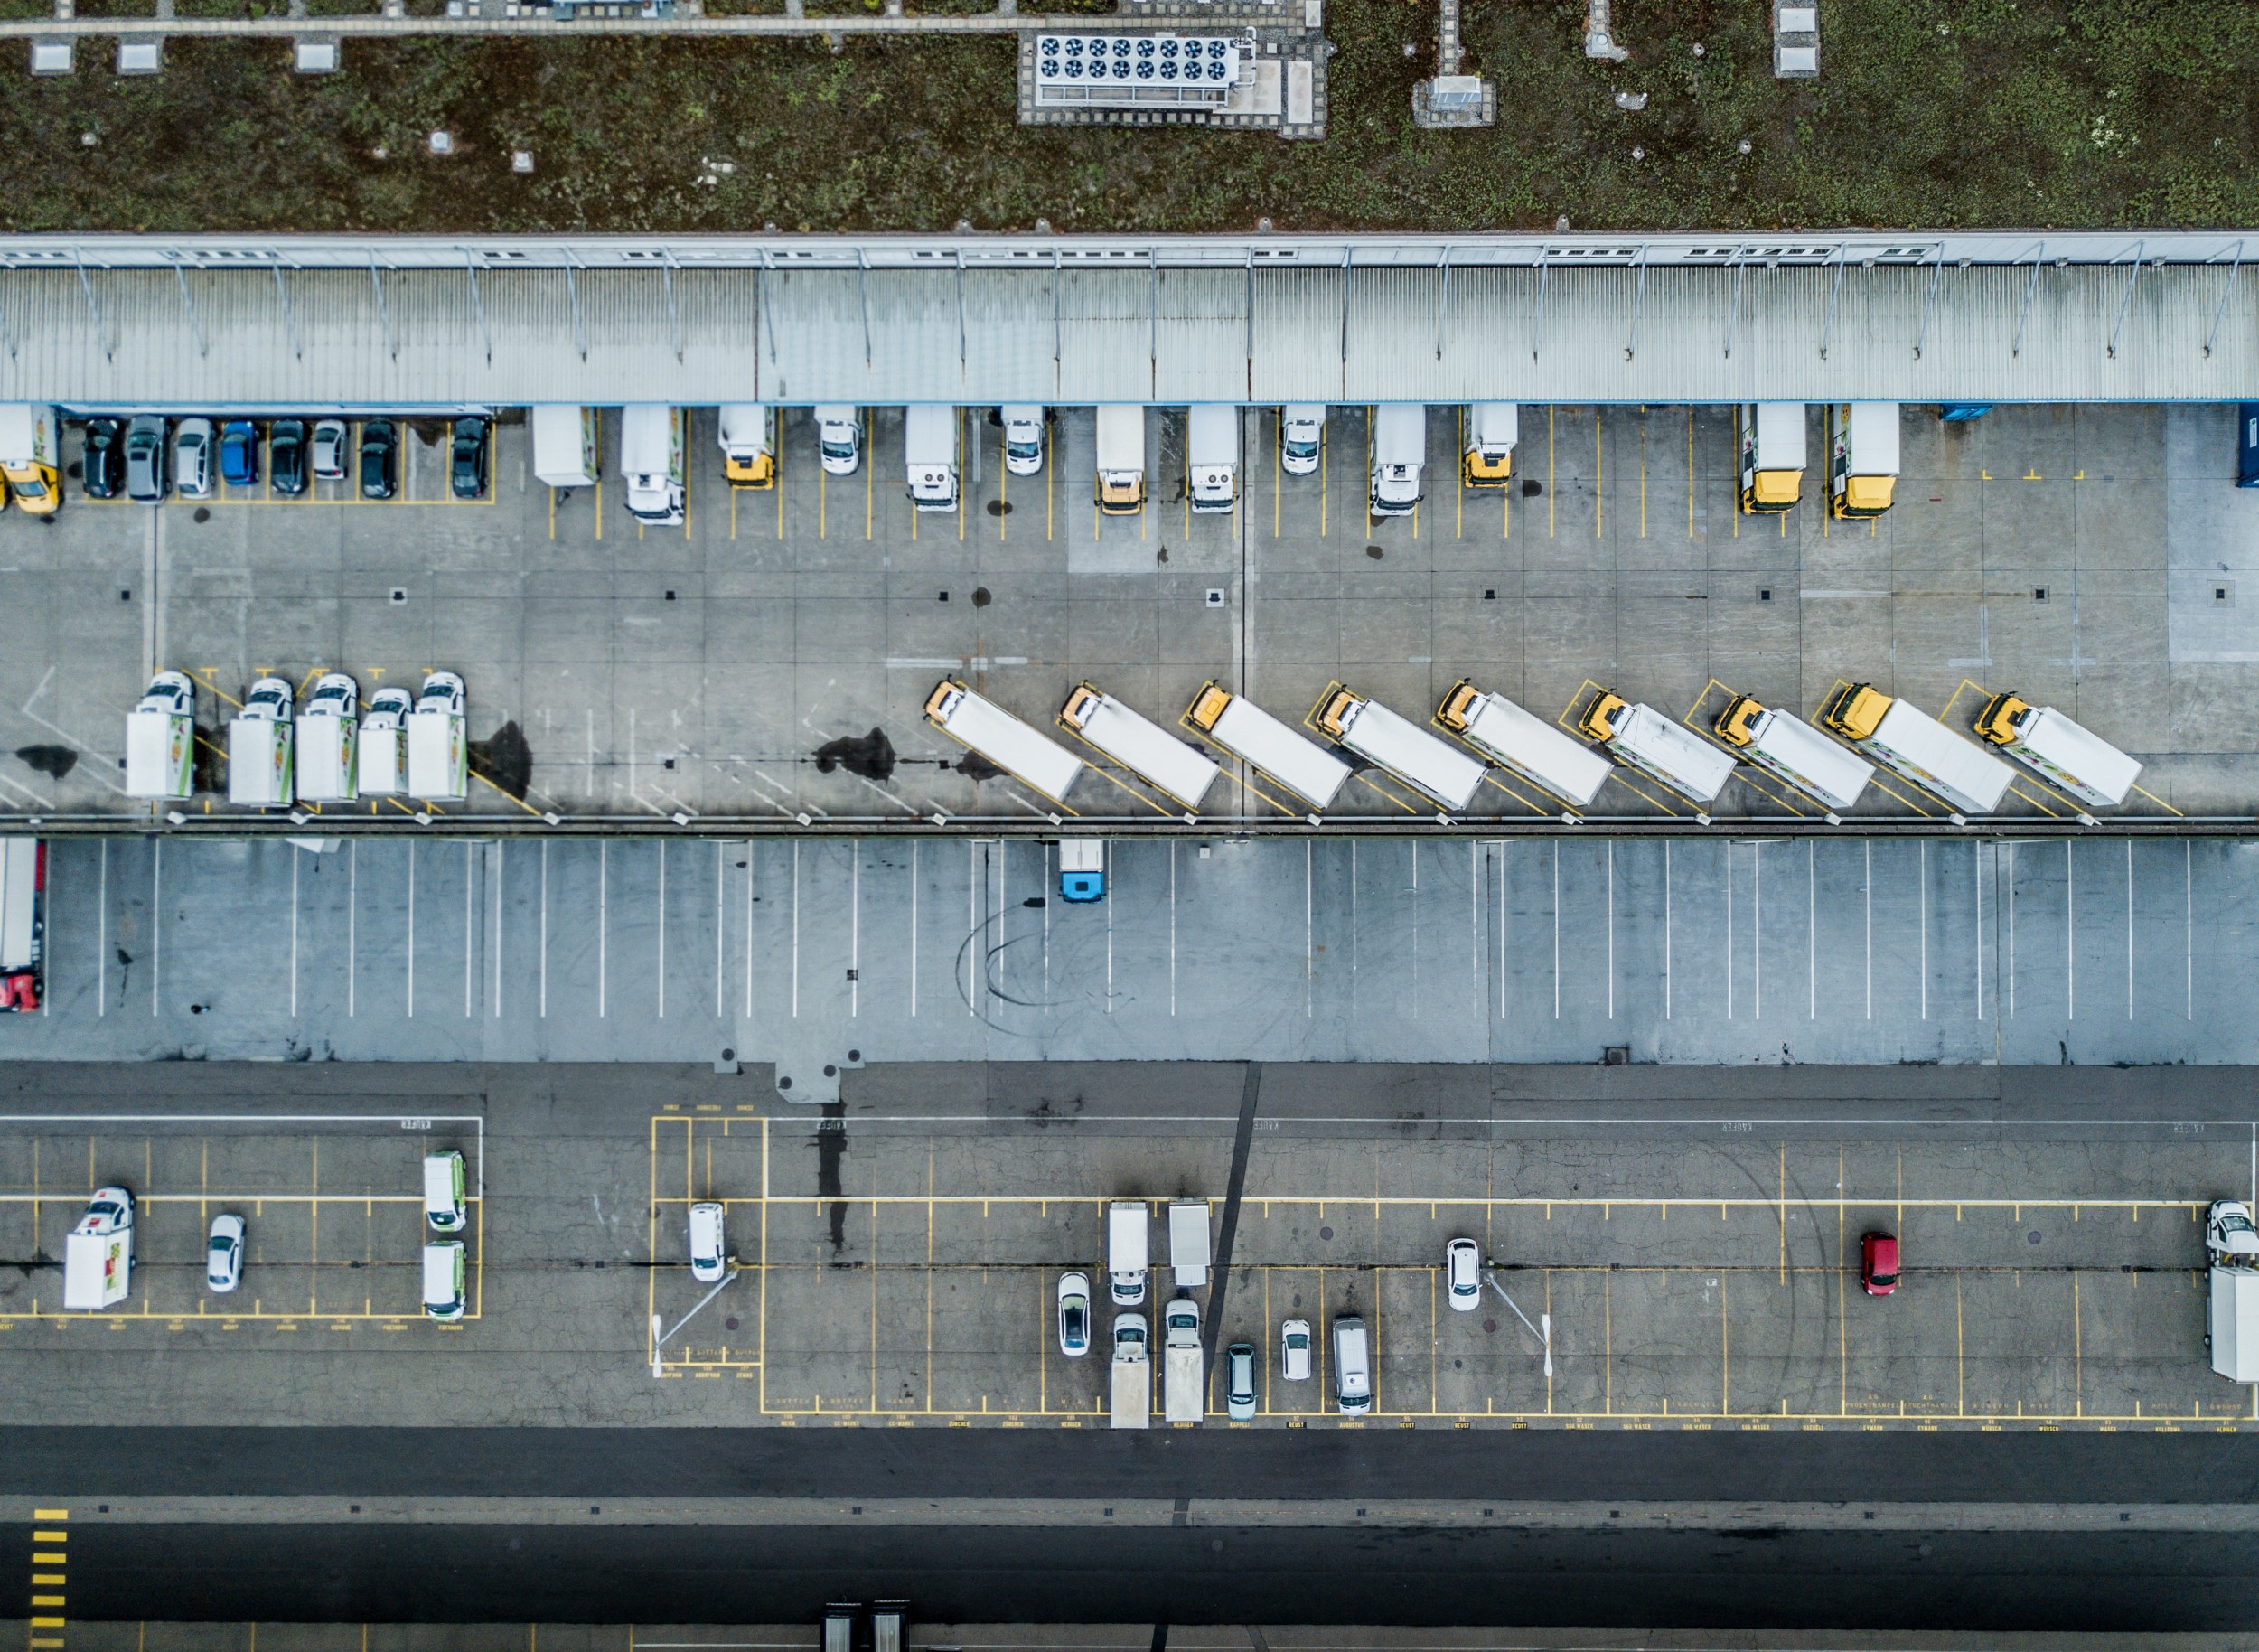 Une grande partie du trafic urbain de marchandises continuera d'être assuré par la route, avec camions et camionnettes de livraison transportant les marchandises au départ des centres logistiques.